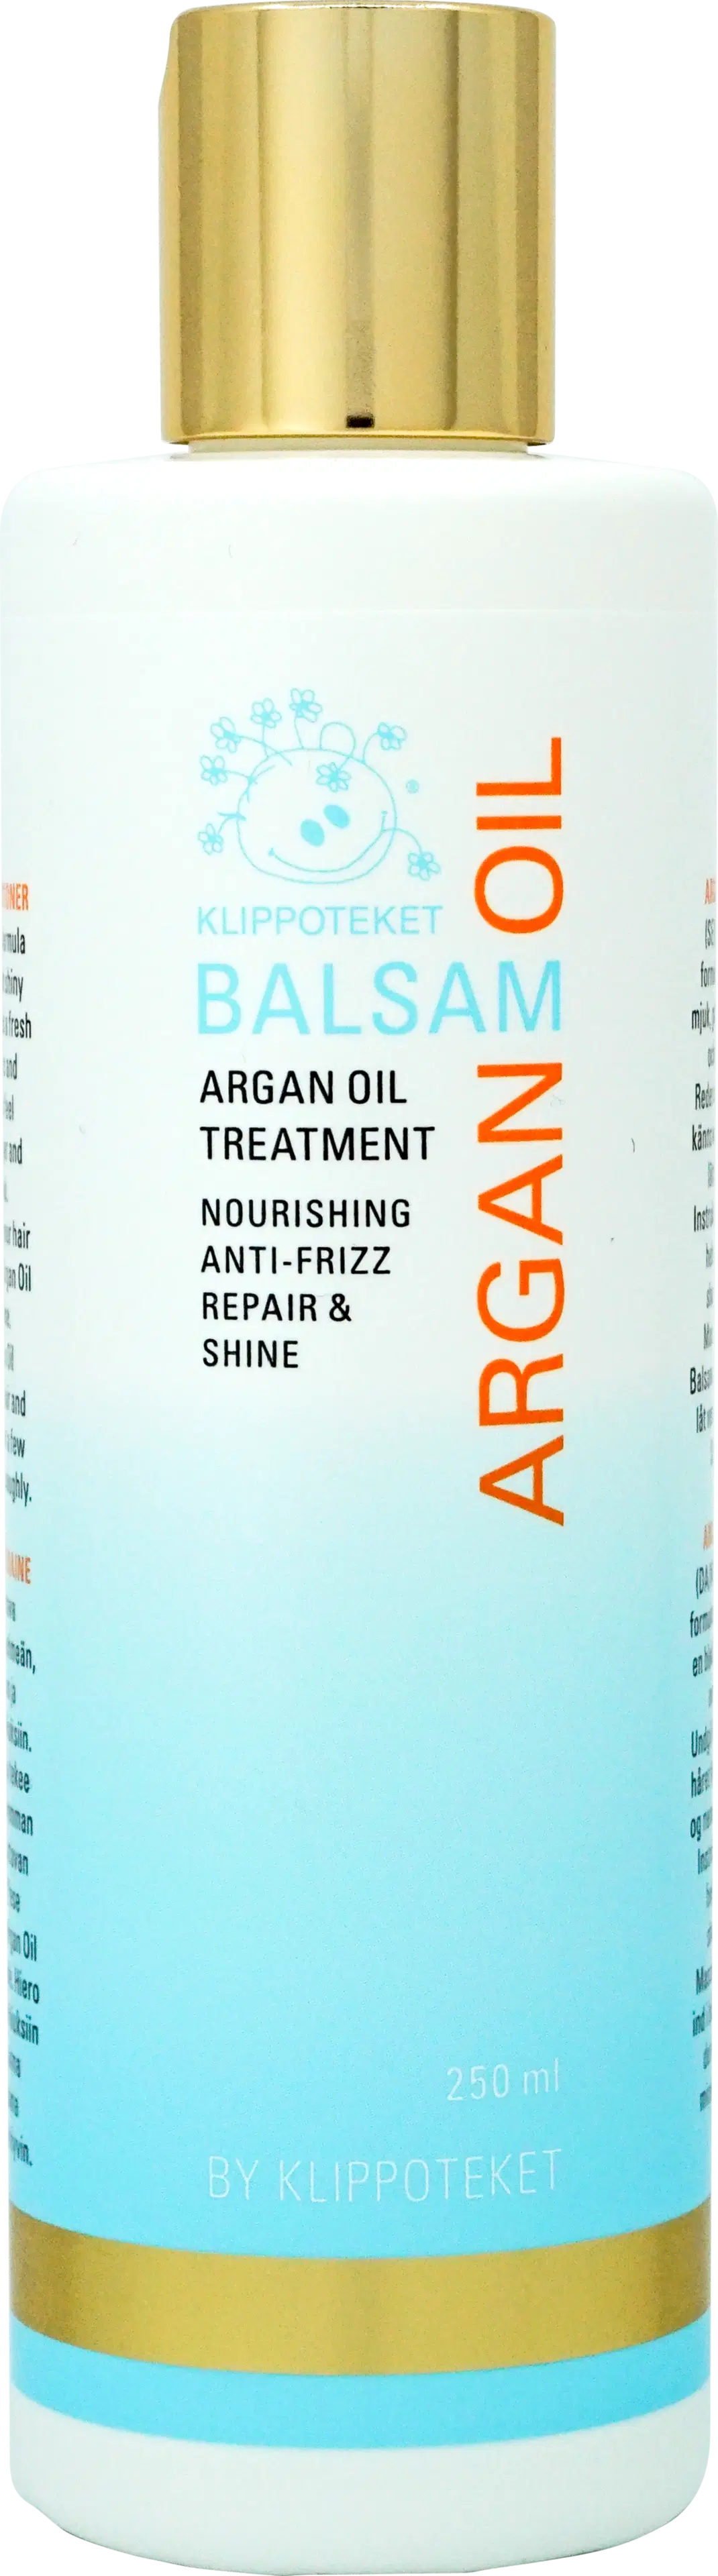 Klippoteket Argan Oil hoitoaine 250 ml